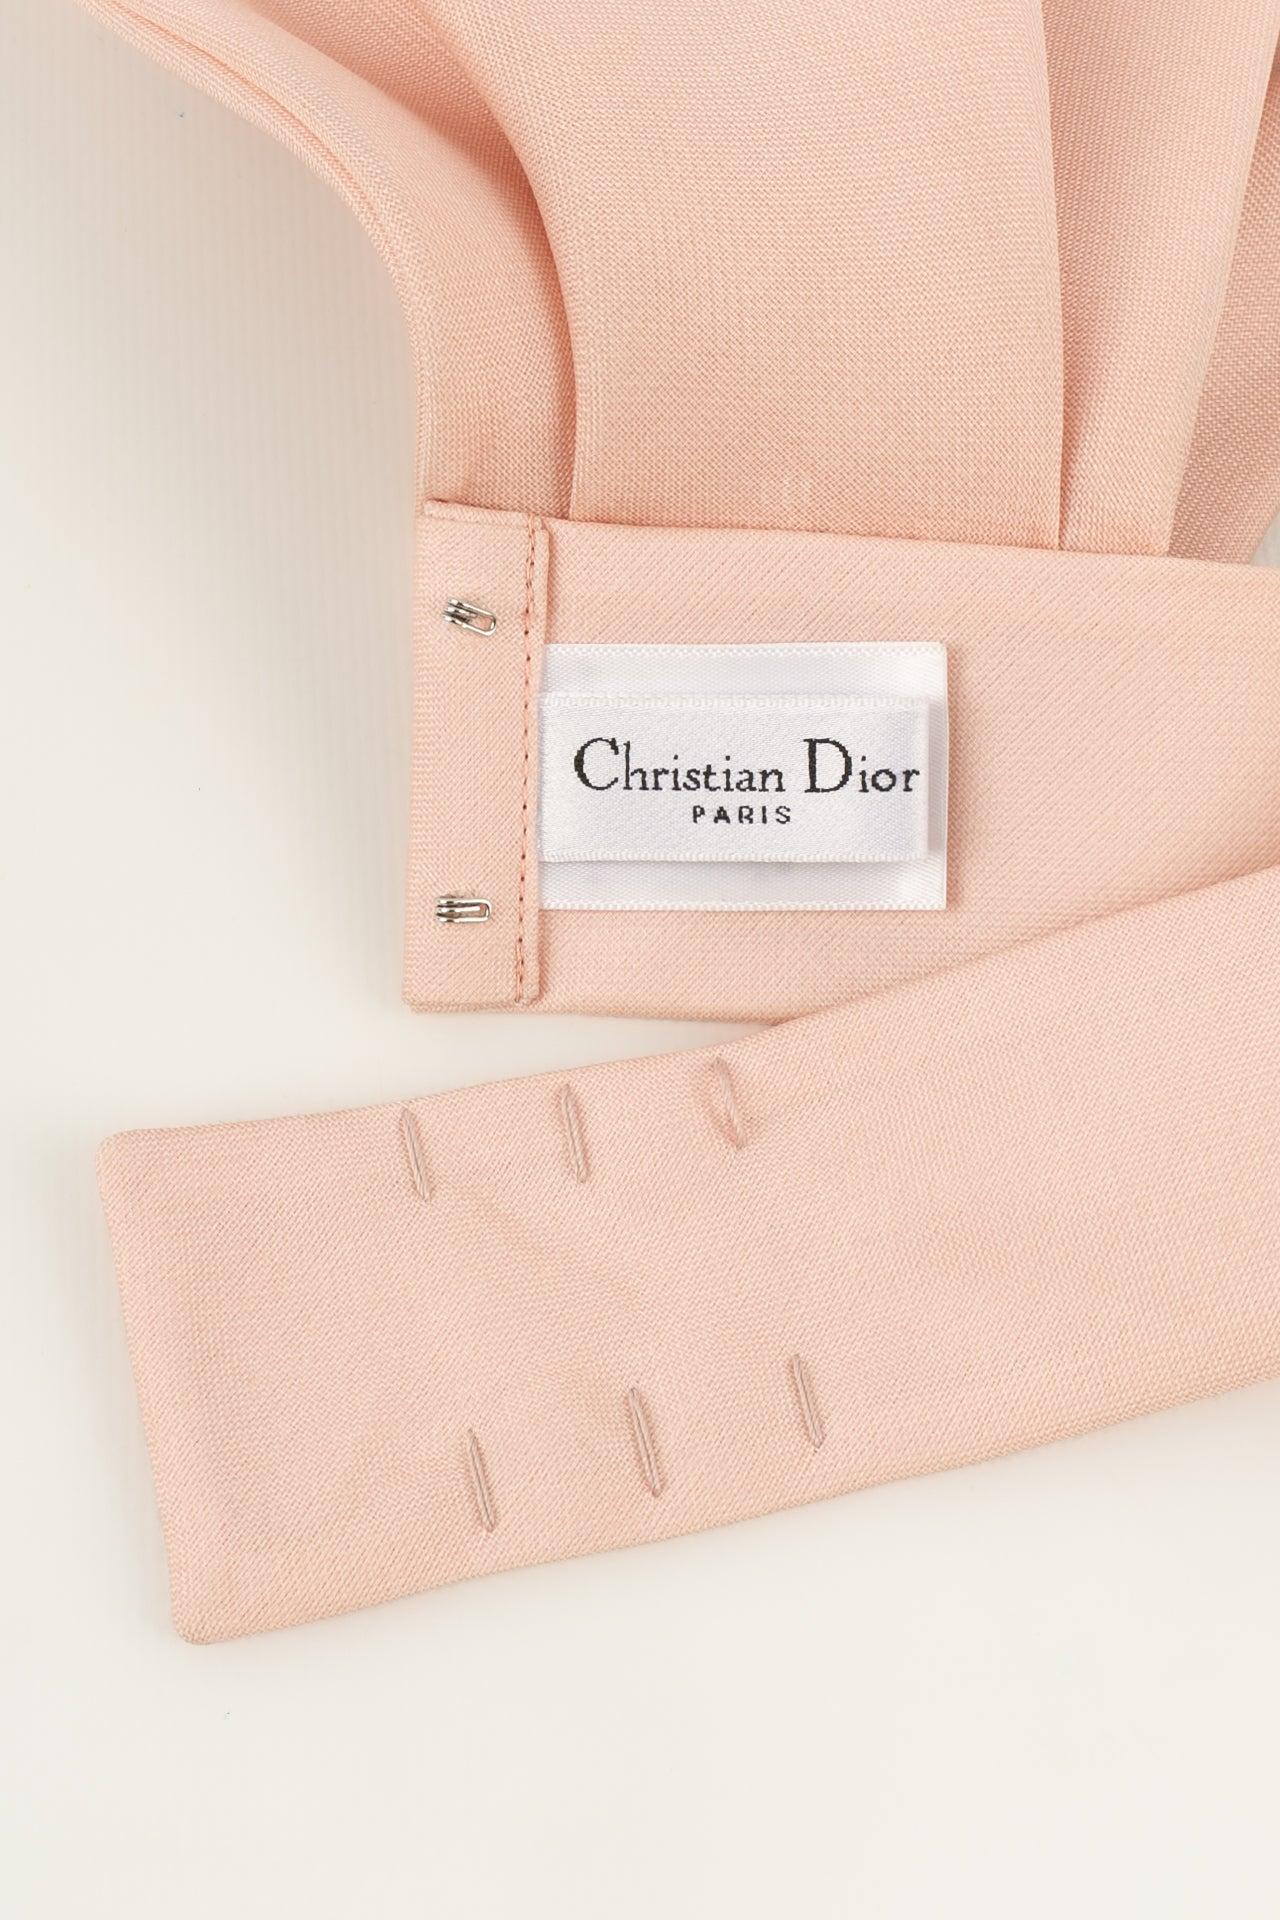 Christian Dior Ascot Tie in Silk  For Sale 3